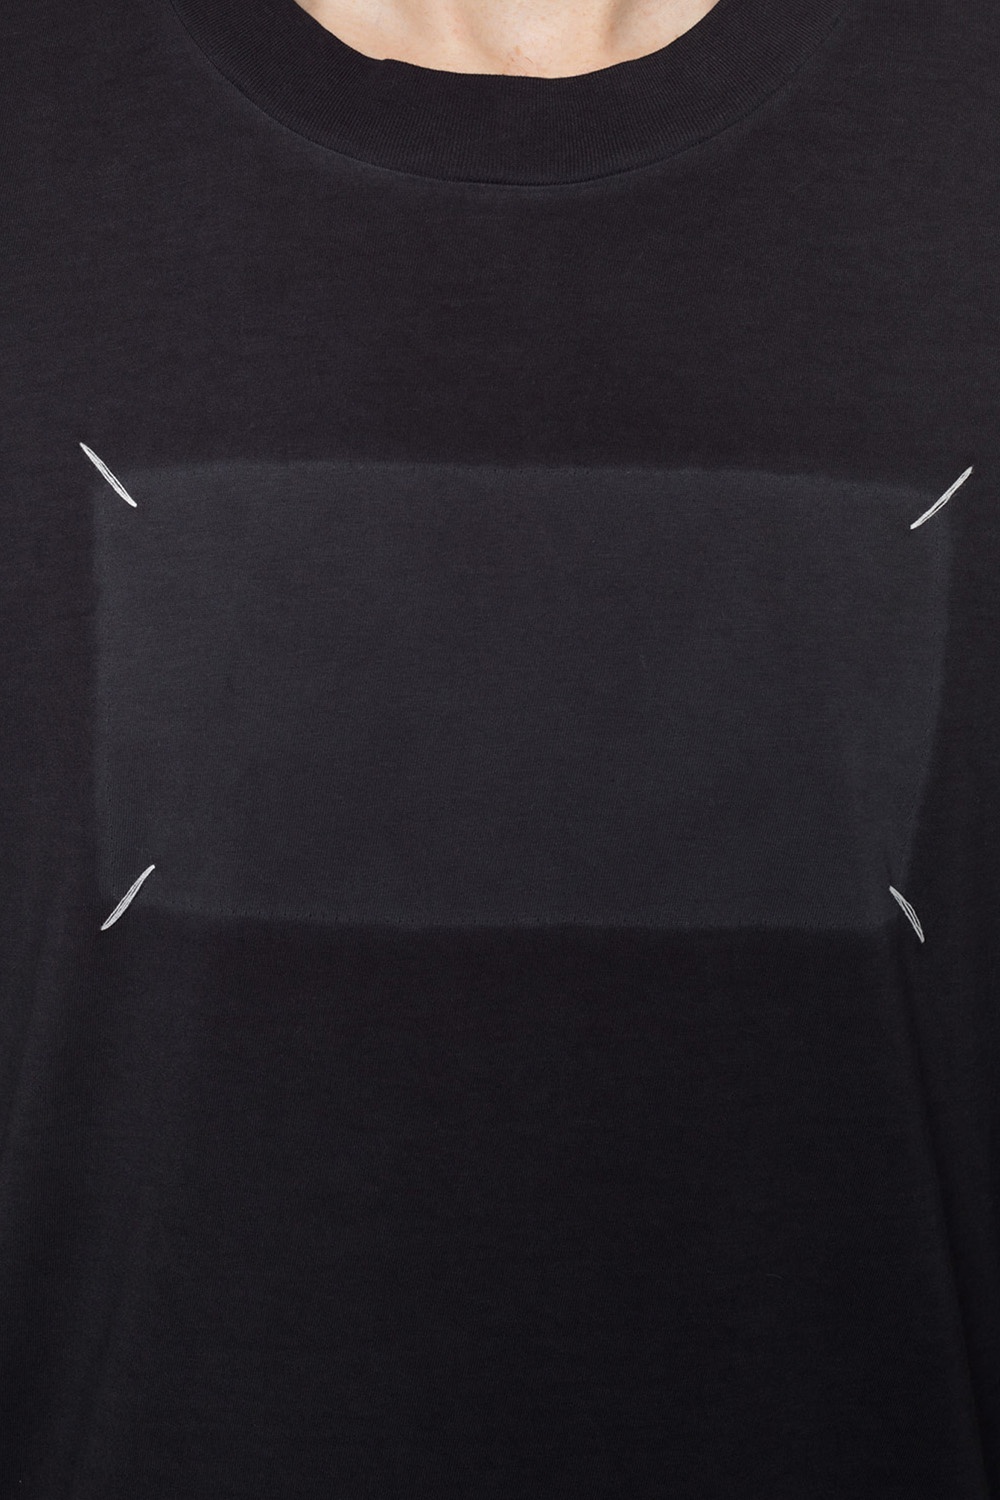 Grey T-shirt with stitching details Maison Margiela - Vitkac Canada